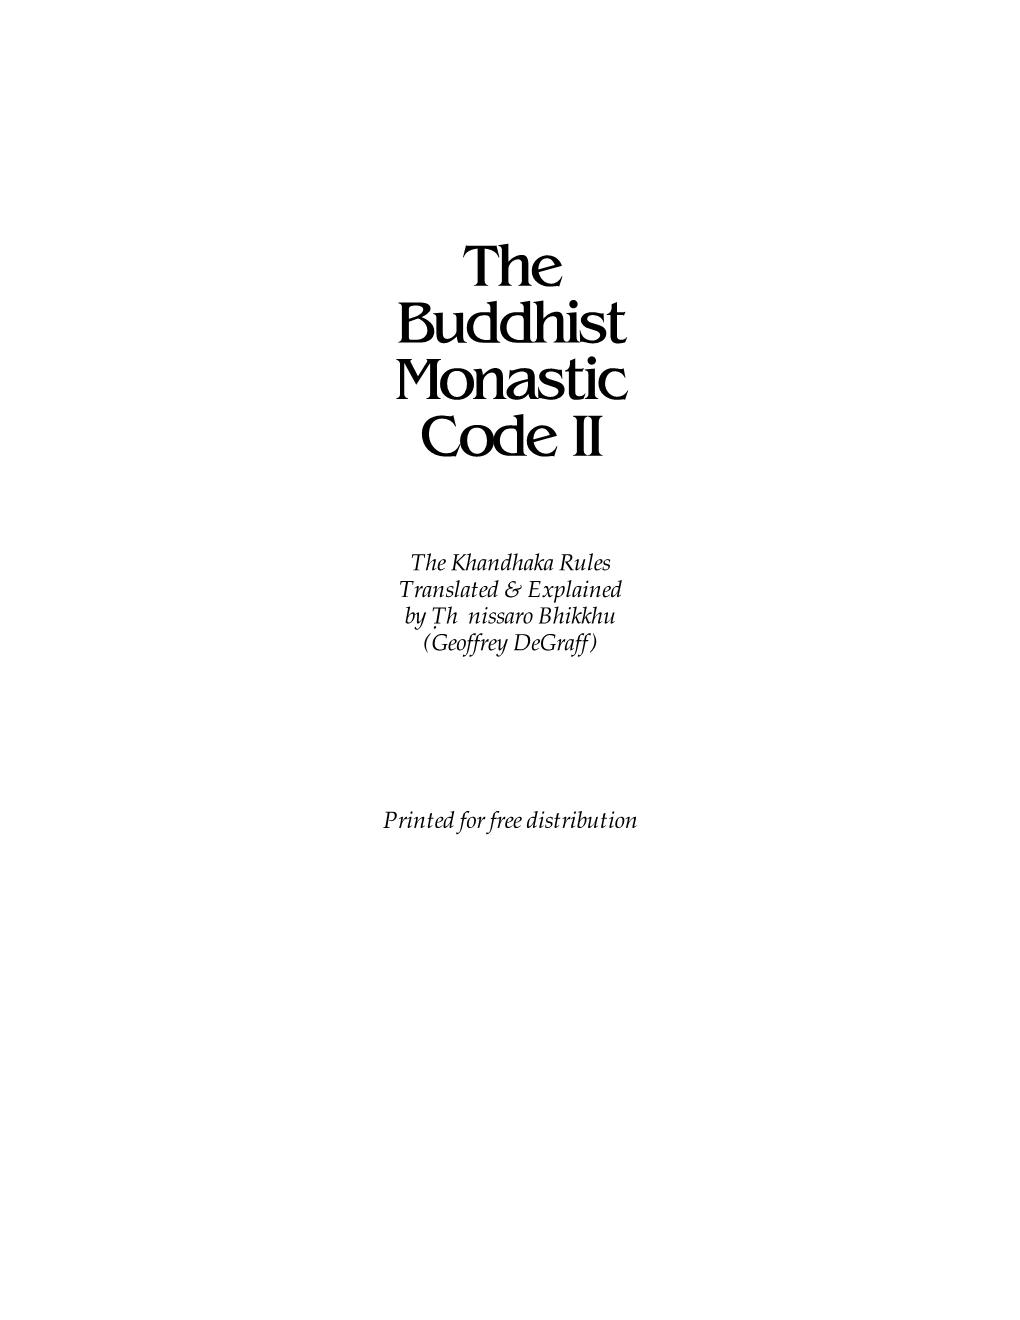 The Buddhist Monastic Code II